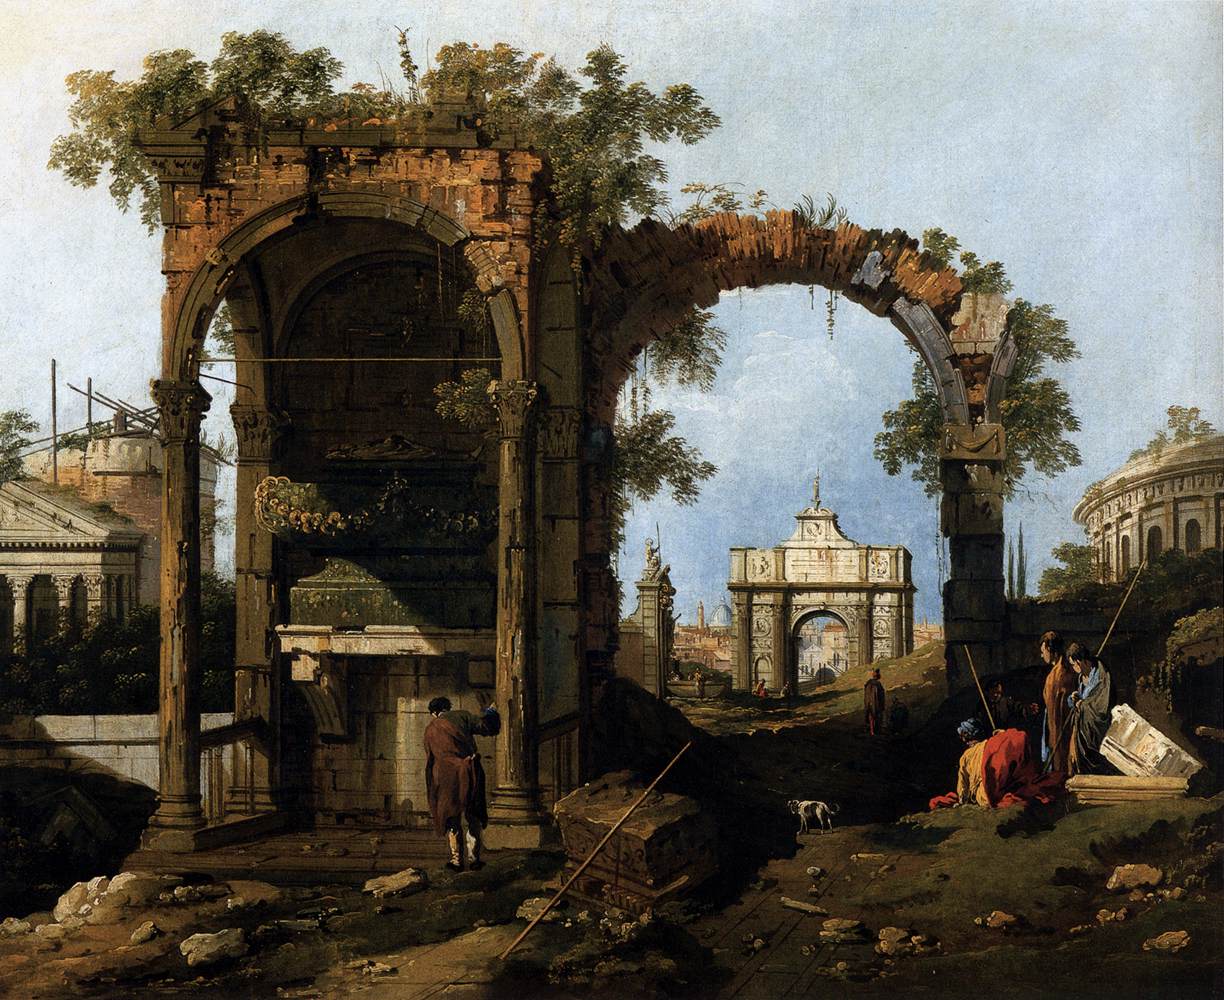 Capricho mit Ruinen und klassischen Gebäuden